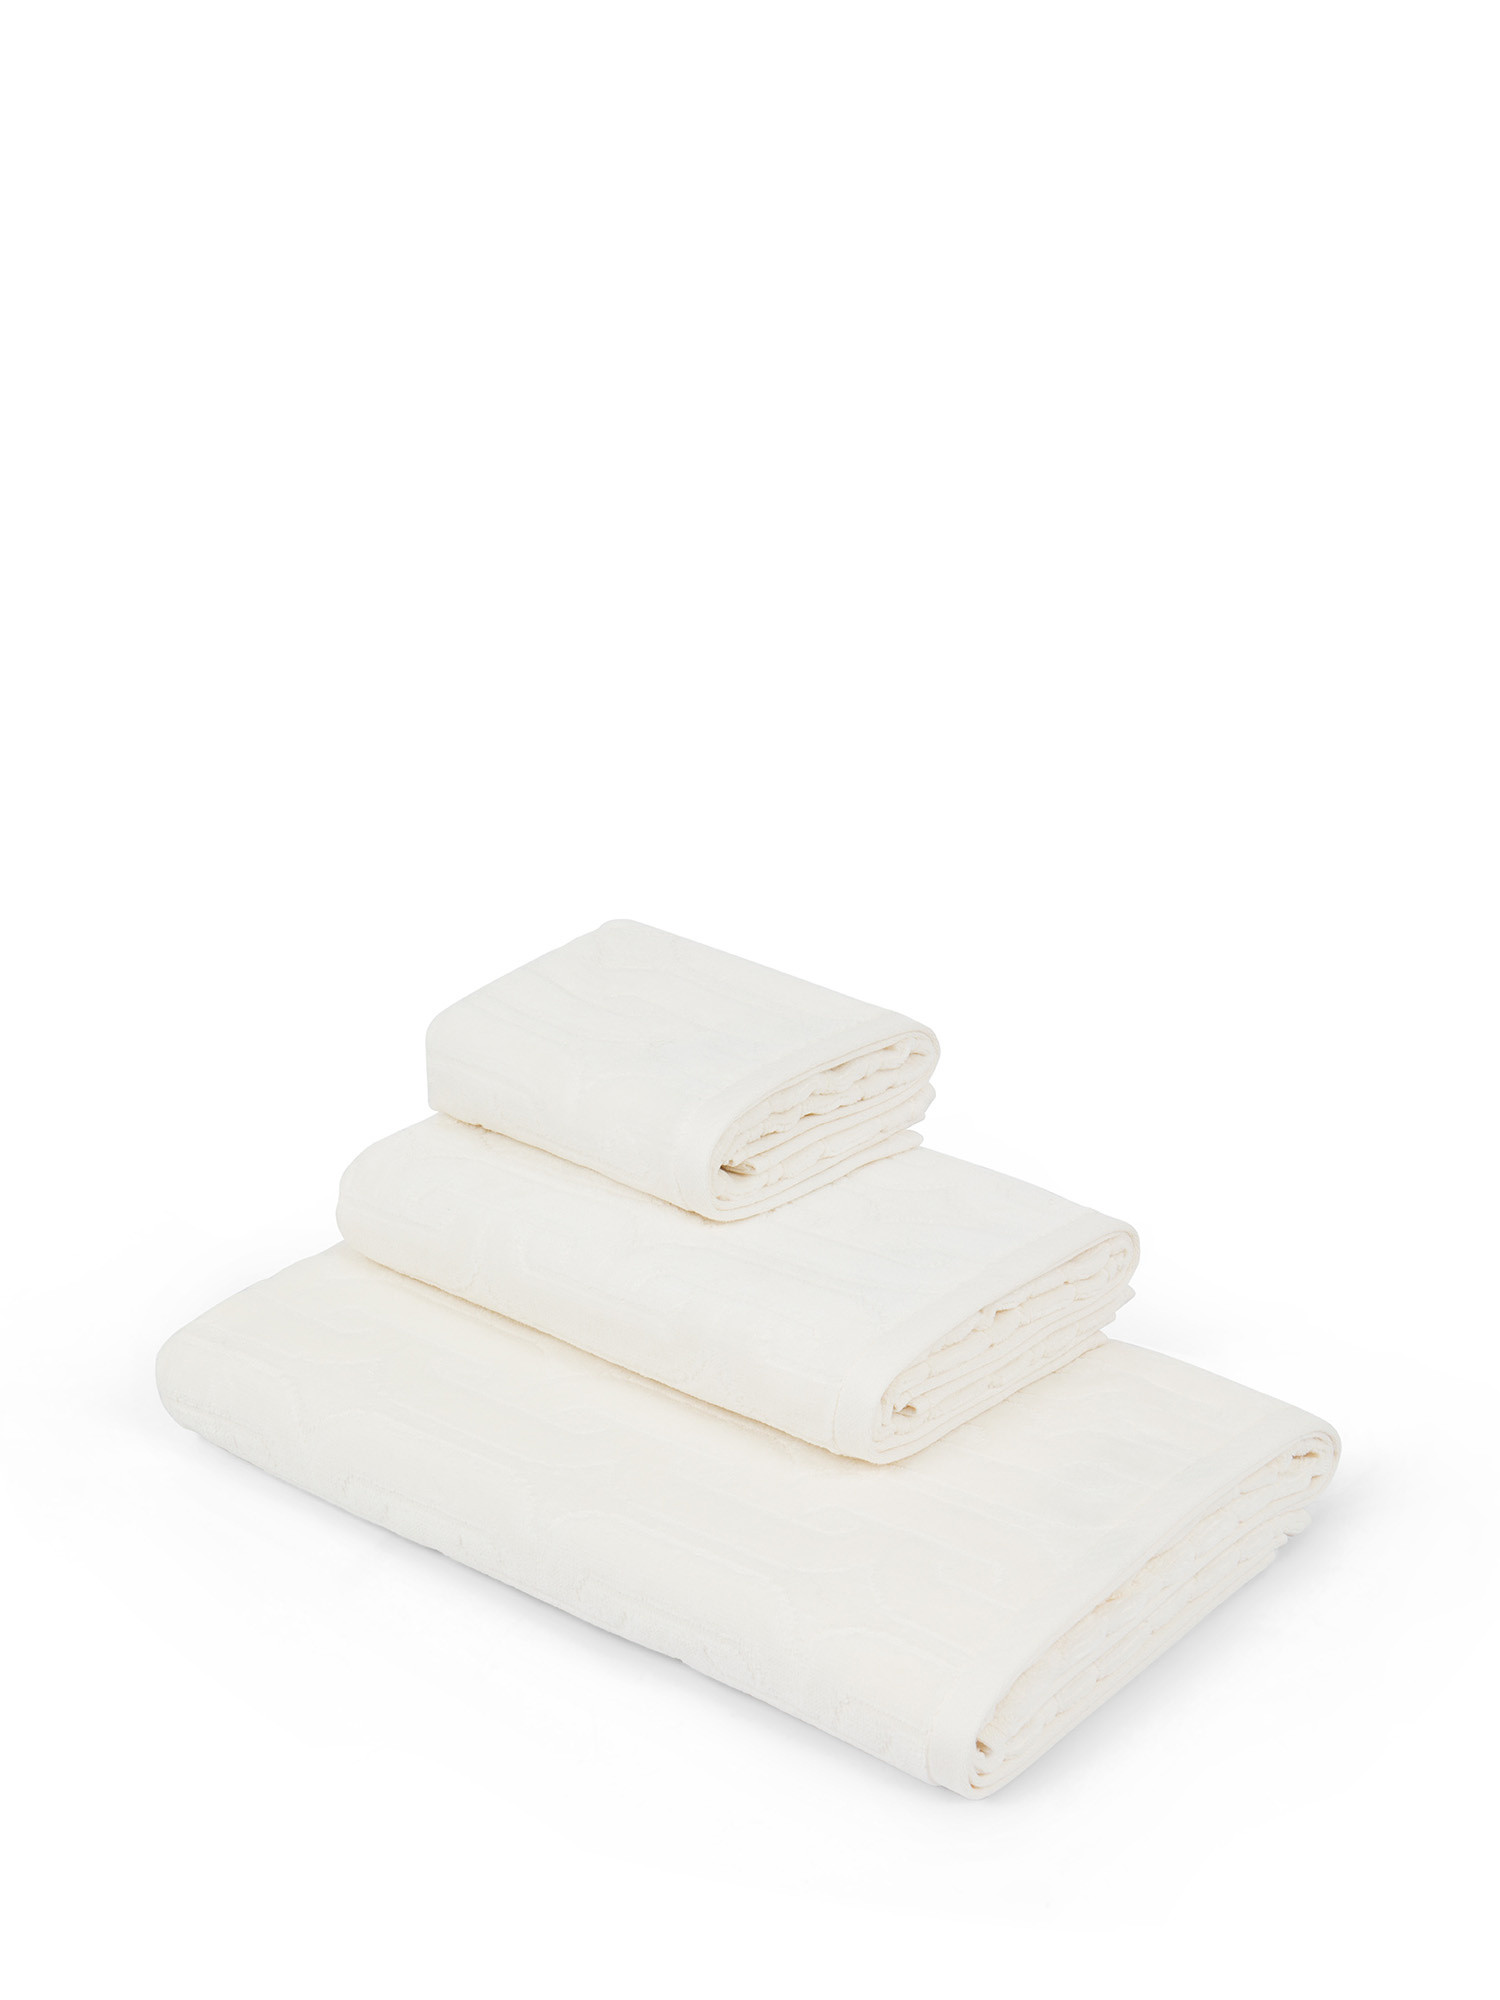 Asciugamano in velour di cotone con lavorazione geometrica a rilievo, Bianco, large image number 0